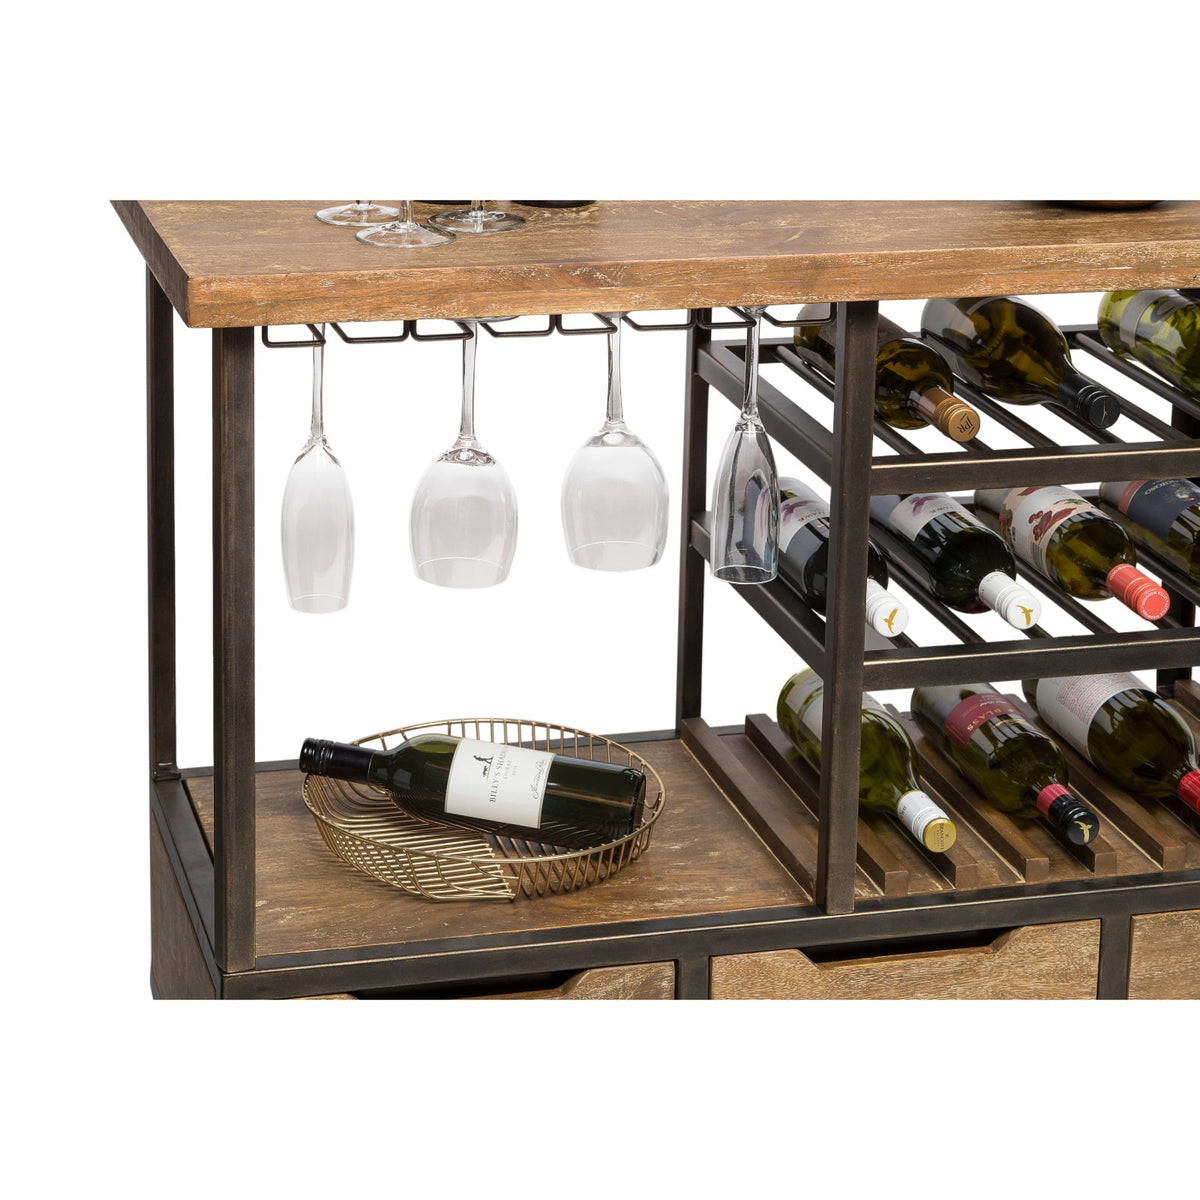 Wooden Bar Cart with Wine Storage - Wine Stash NZ